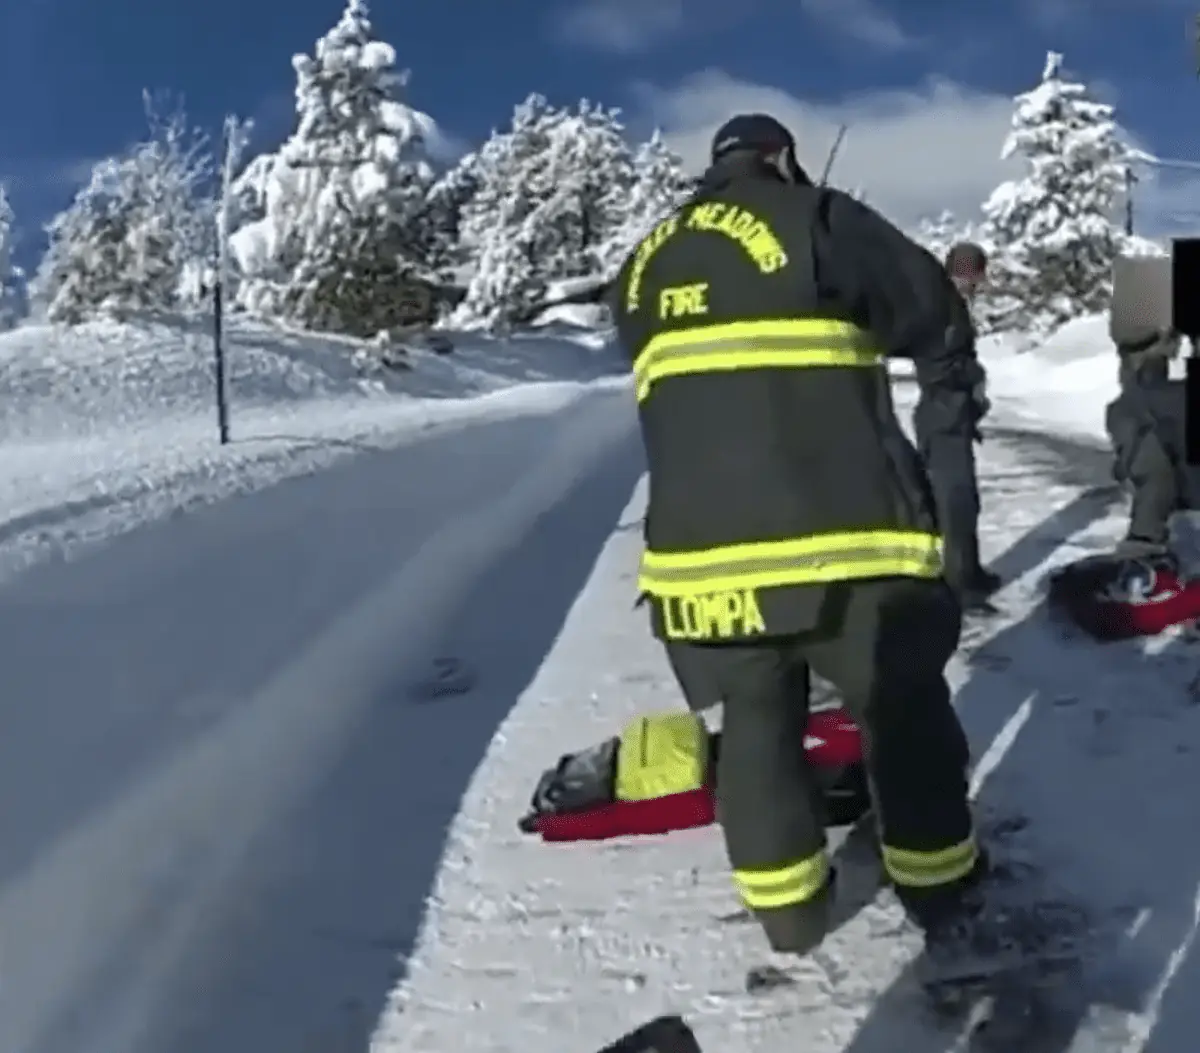 Circula video del rescate tras accidente del actor Jeremy Renner